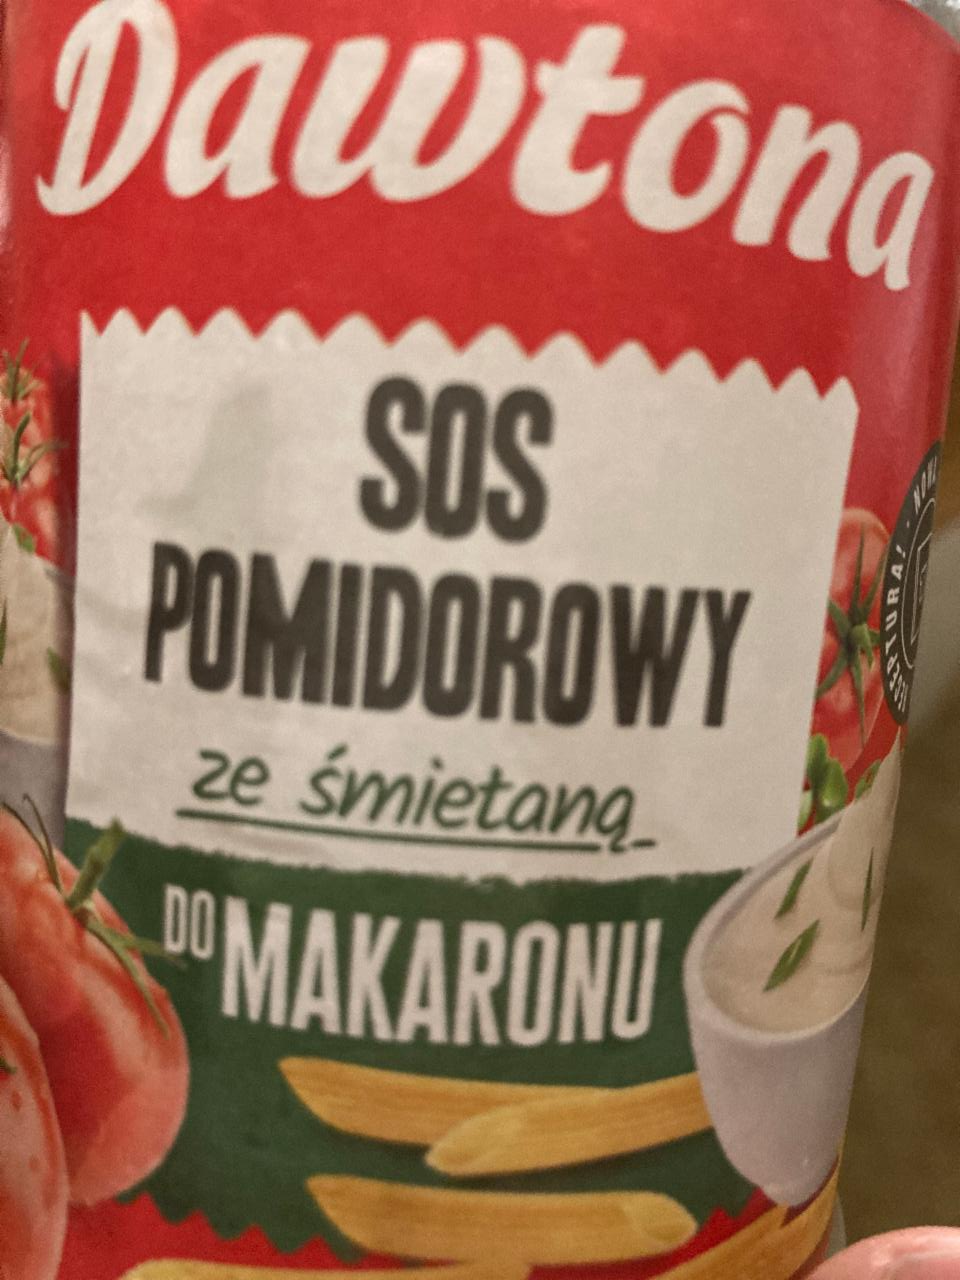 Fotografie - SOS pomidorowy do makaronu ze smietana Dawtona